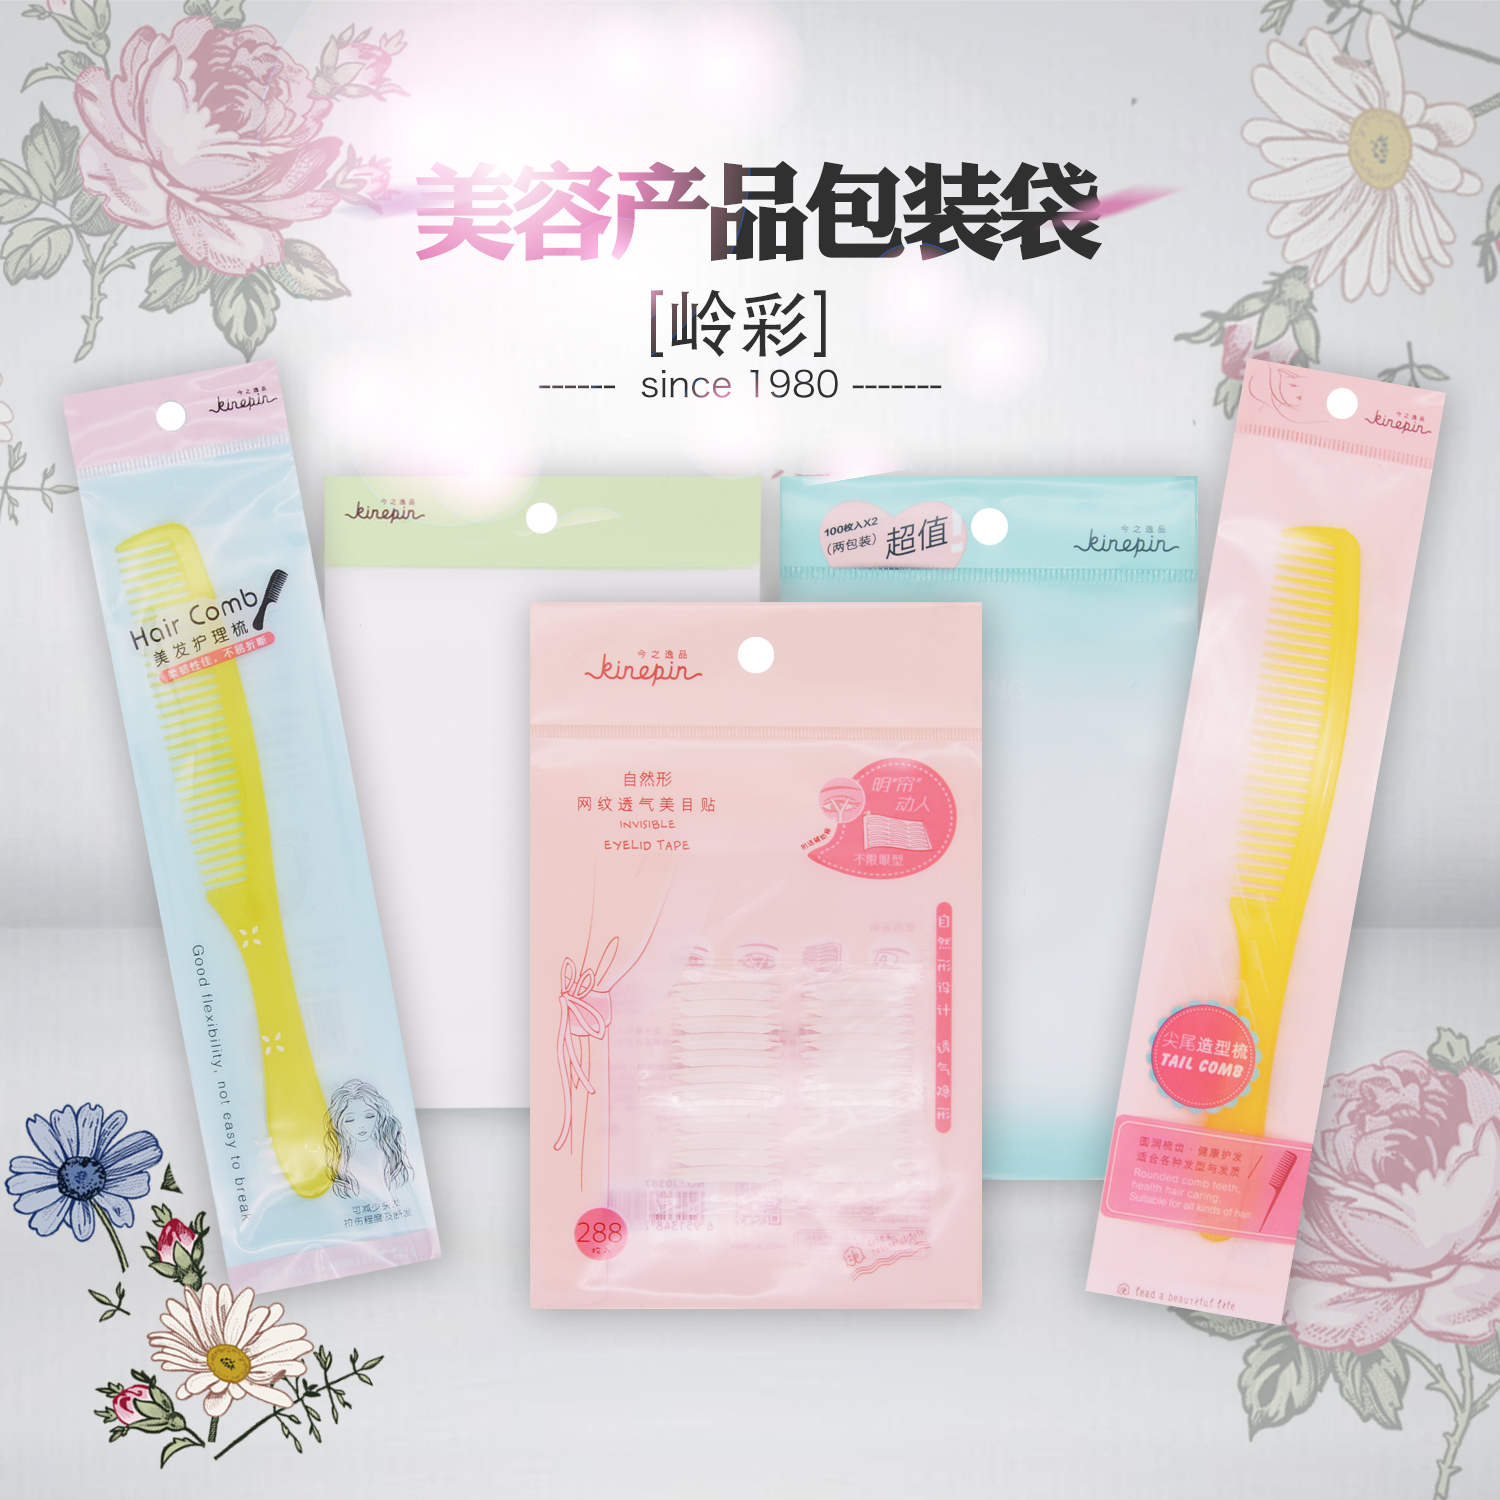 Self-adhesive bag-cosmetics series 2